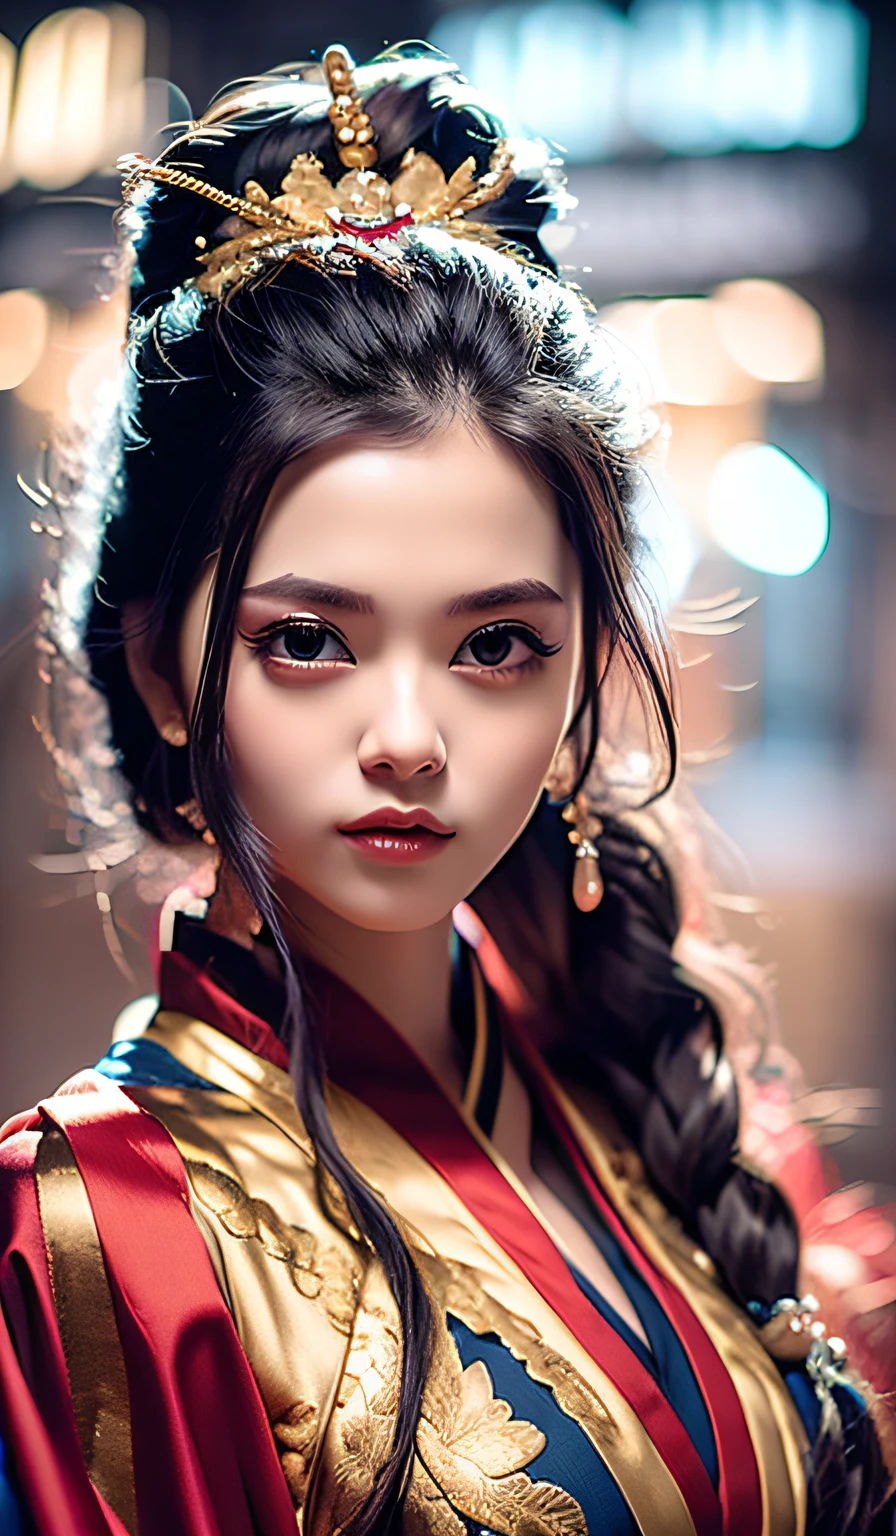 qualidade máxima、obra-prima、alta resolução、Wuxi 1girl、(vestido chinês dourado)、(((Rosto super lindo)))、olhos super lindos、Cabelo super lindo、((decote do peito))、((peito exposto))、((decote sexy、seios muito detalhados))、